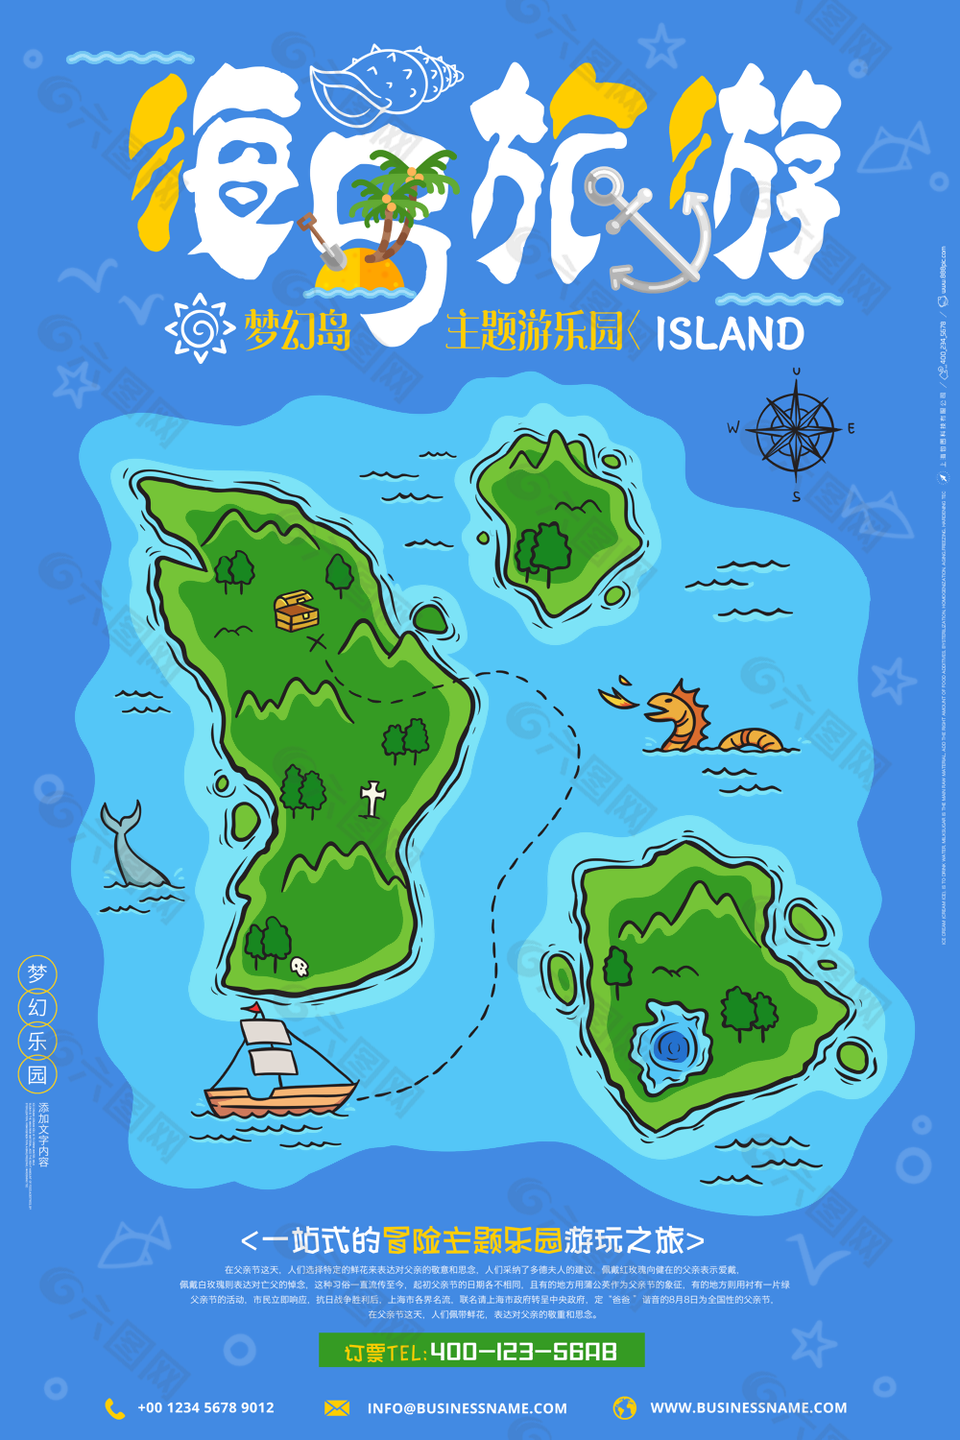 创意卡通梦幻乐园海岛旅游海报素材下载